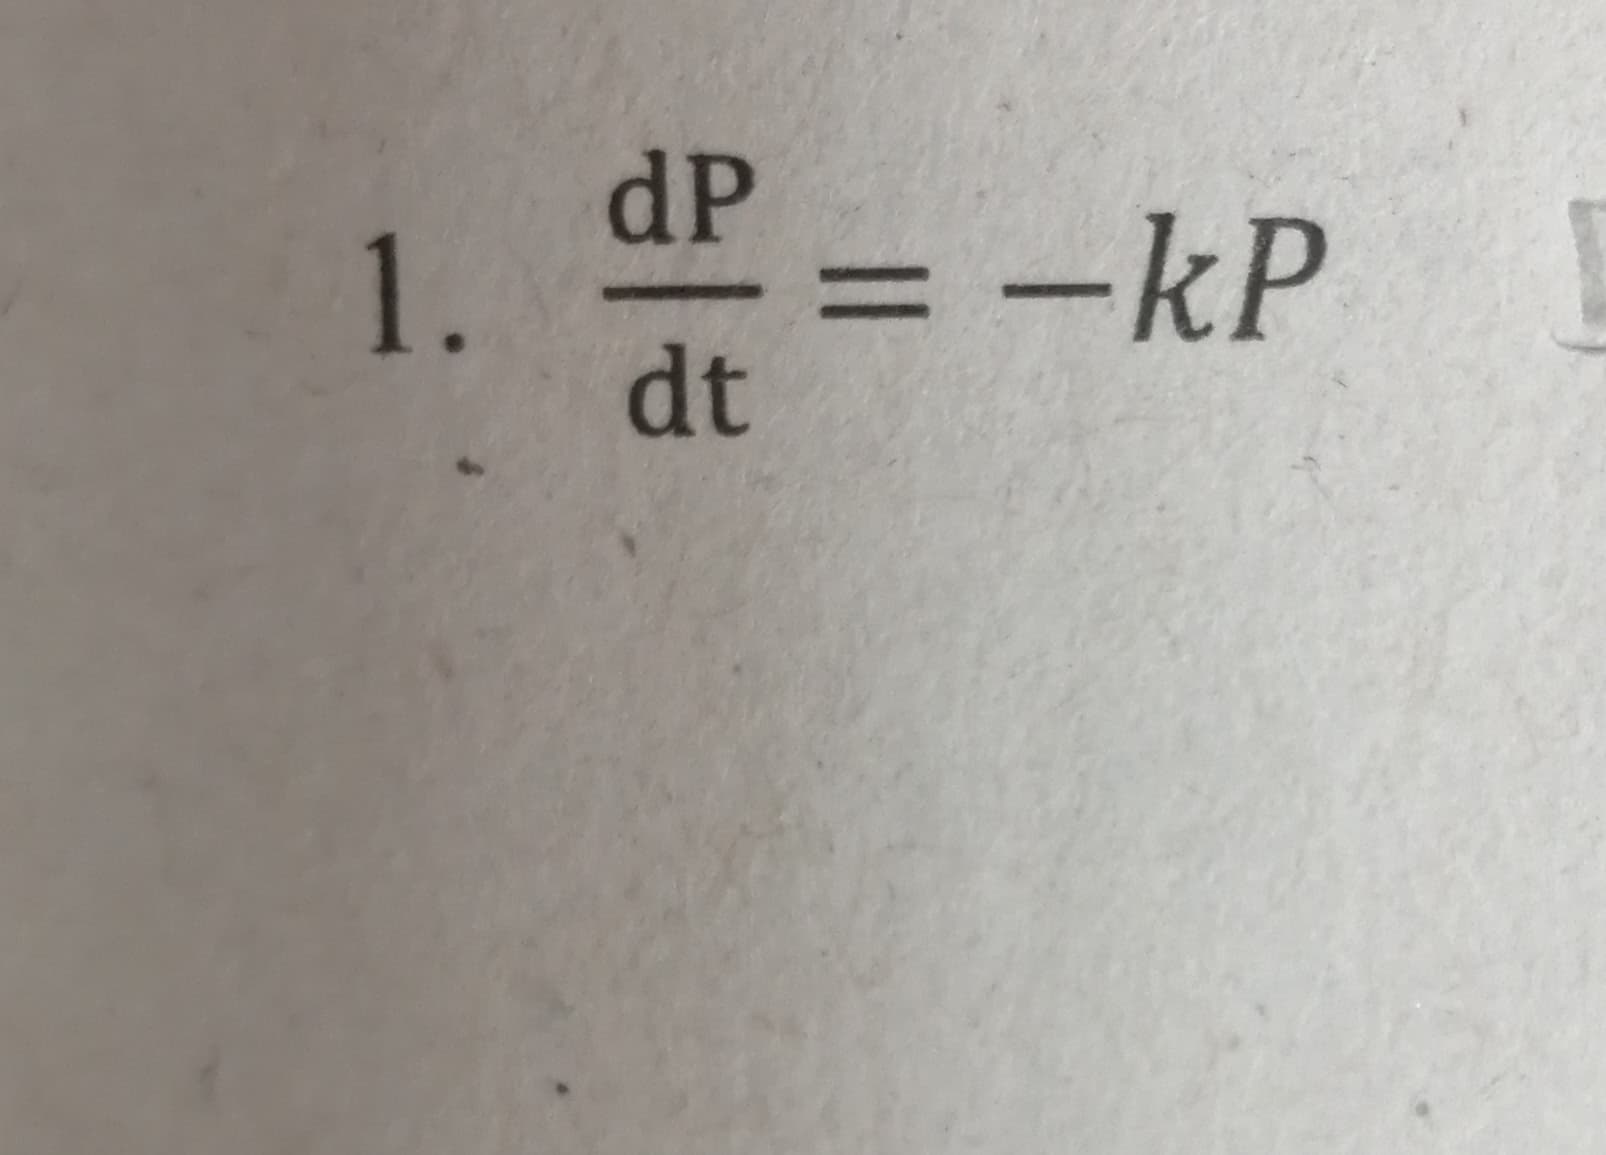 dP
1.
- -kP
%3D
dt
